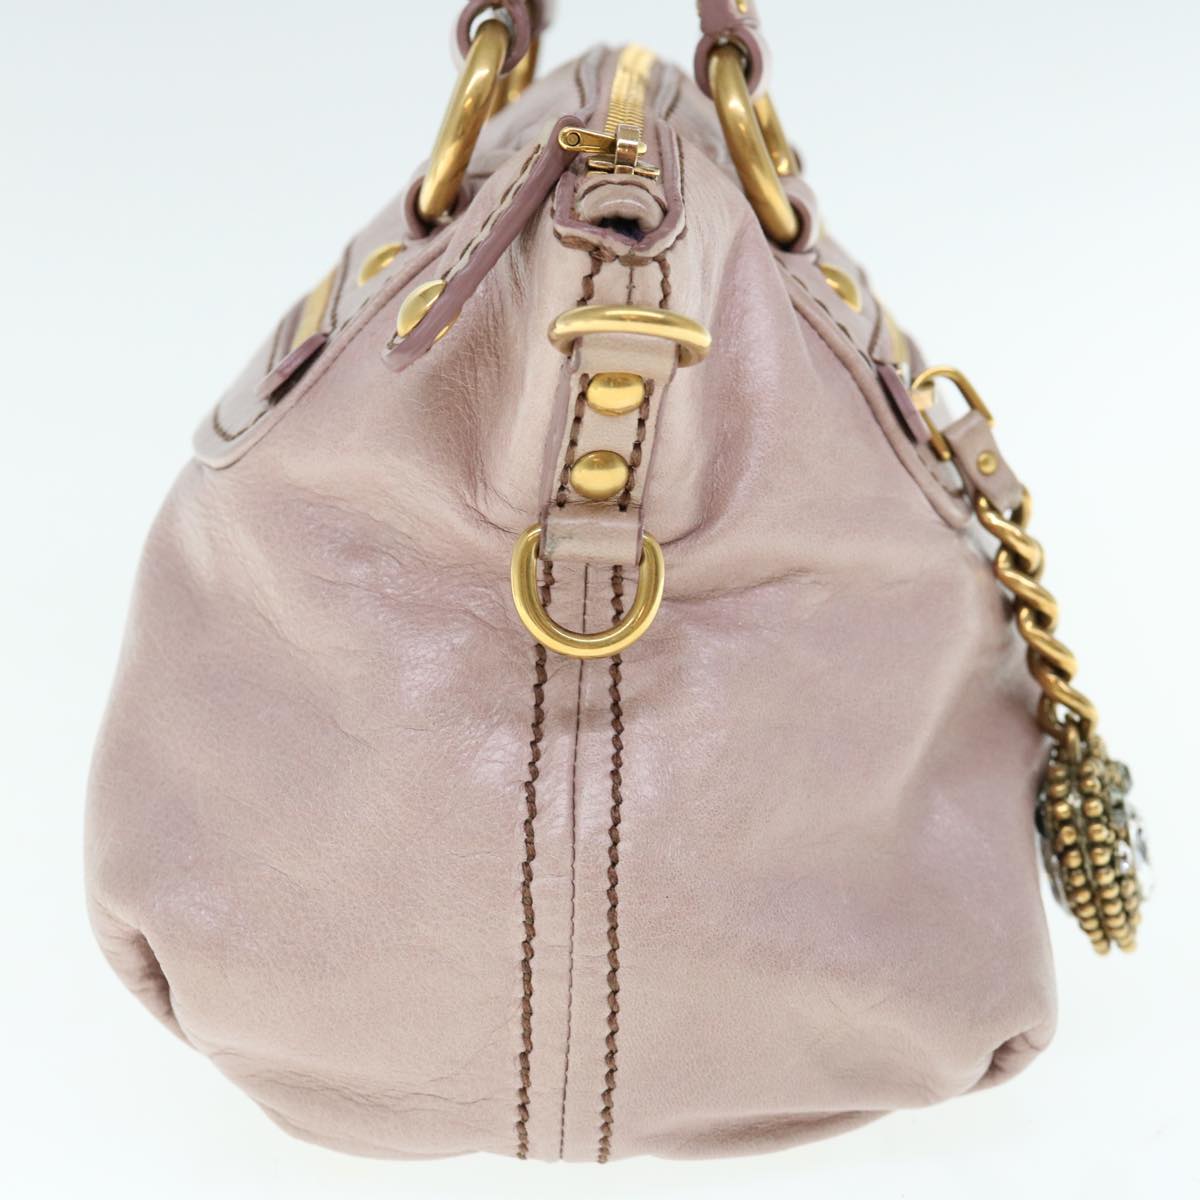 Miu Miu Hand Bag Leather 2way Pink Auth 64773